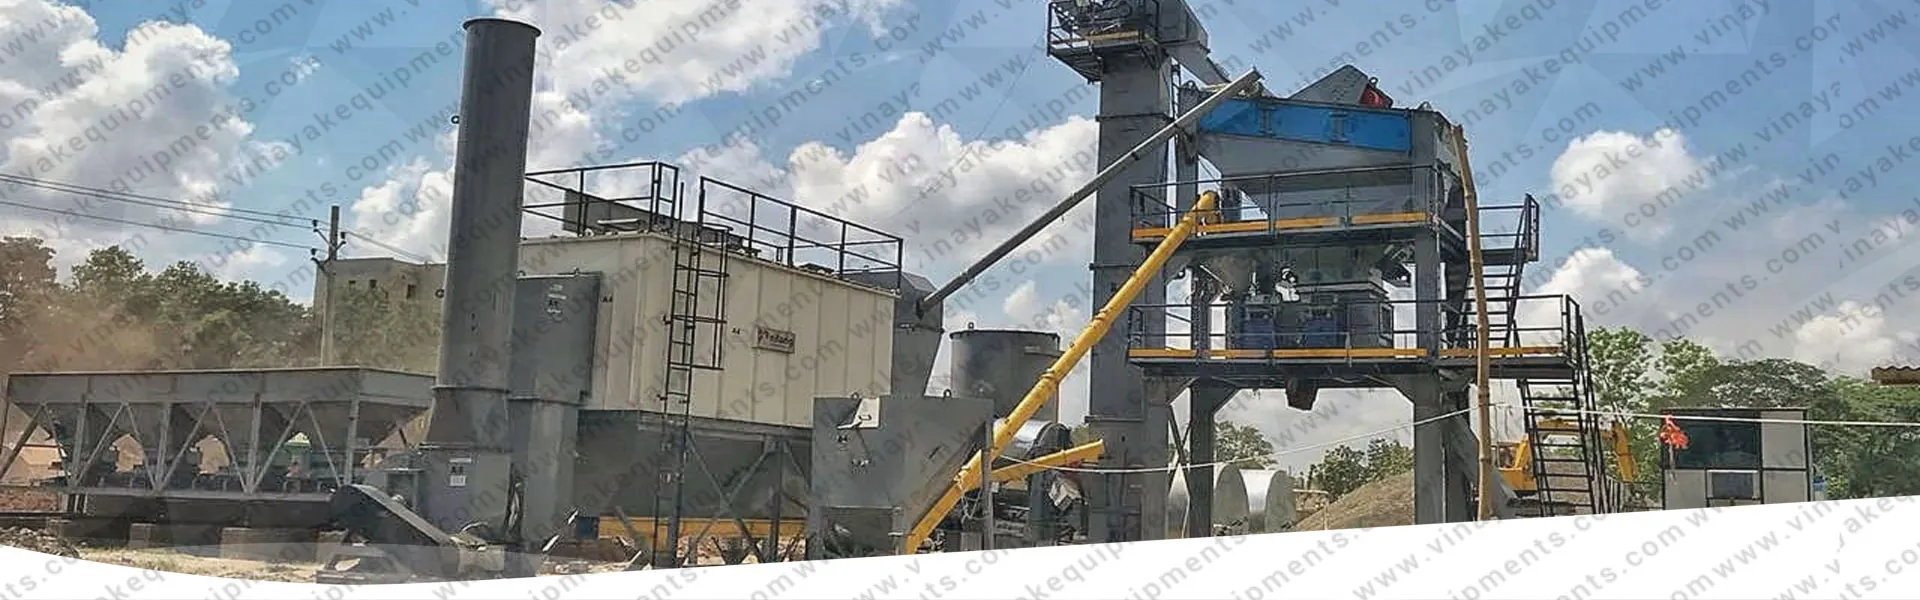 ready-mix-concrete-plant-banner